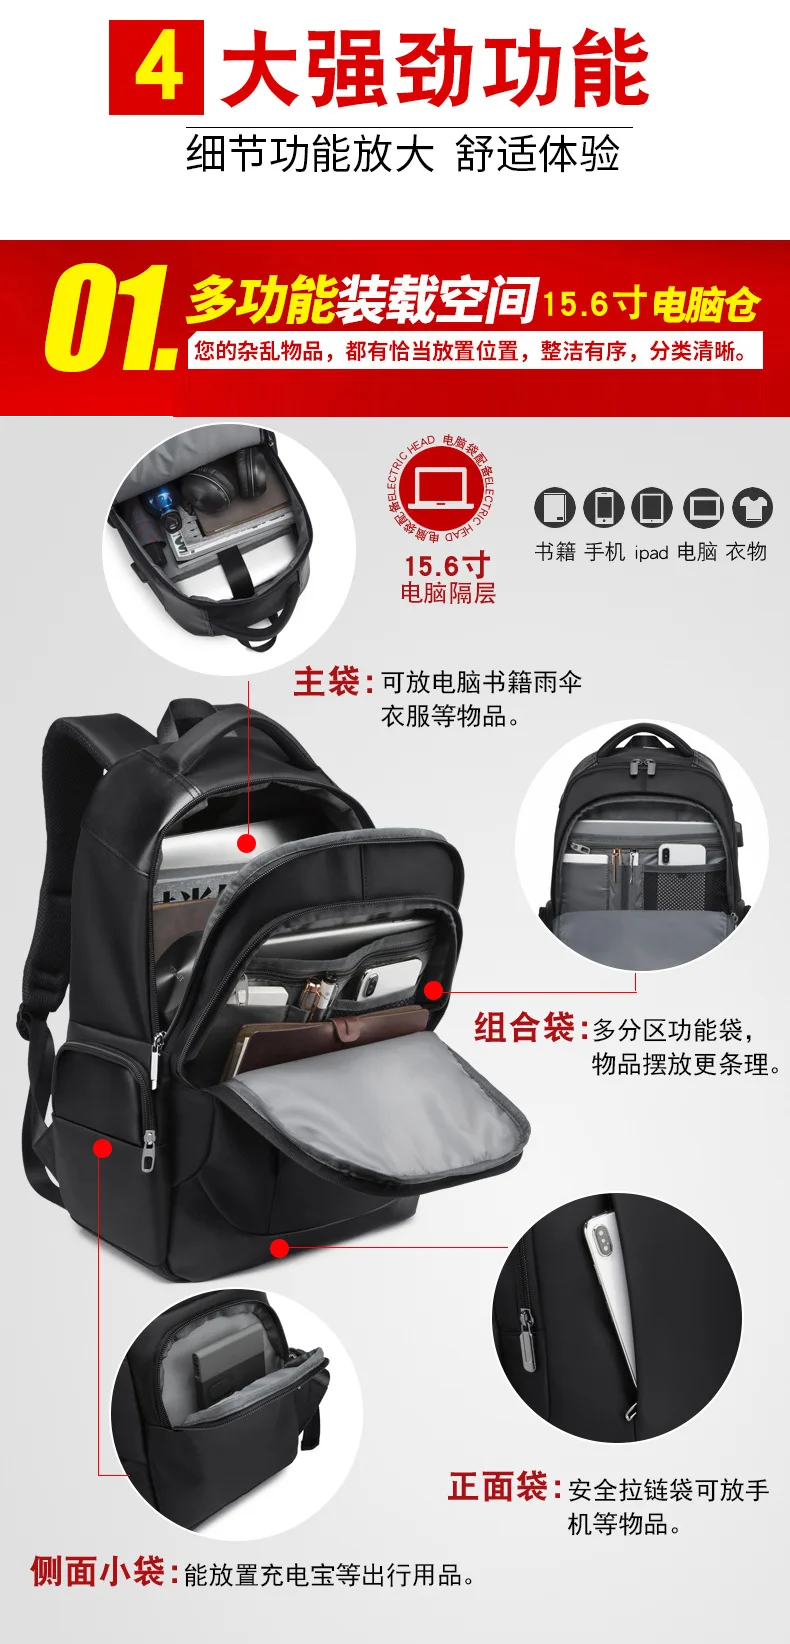 15,6 дюймовый ноутбук путешествия рюкзак мужской бизнес USB заряд водонепроницаемый  школьный портфель для подростка